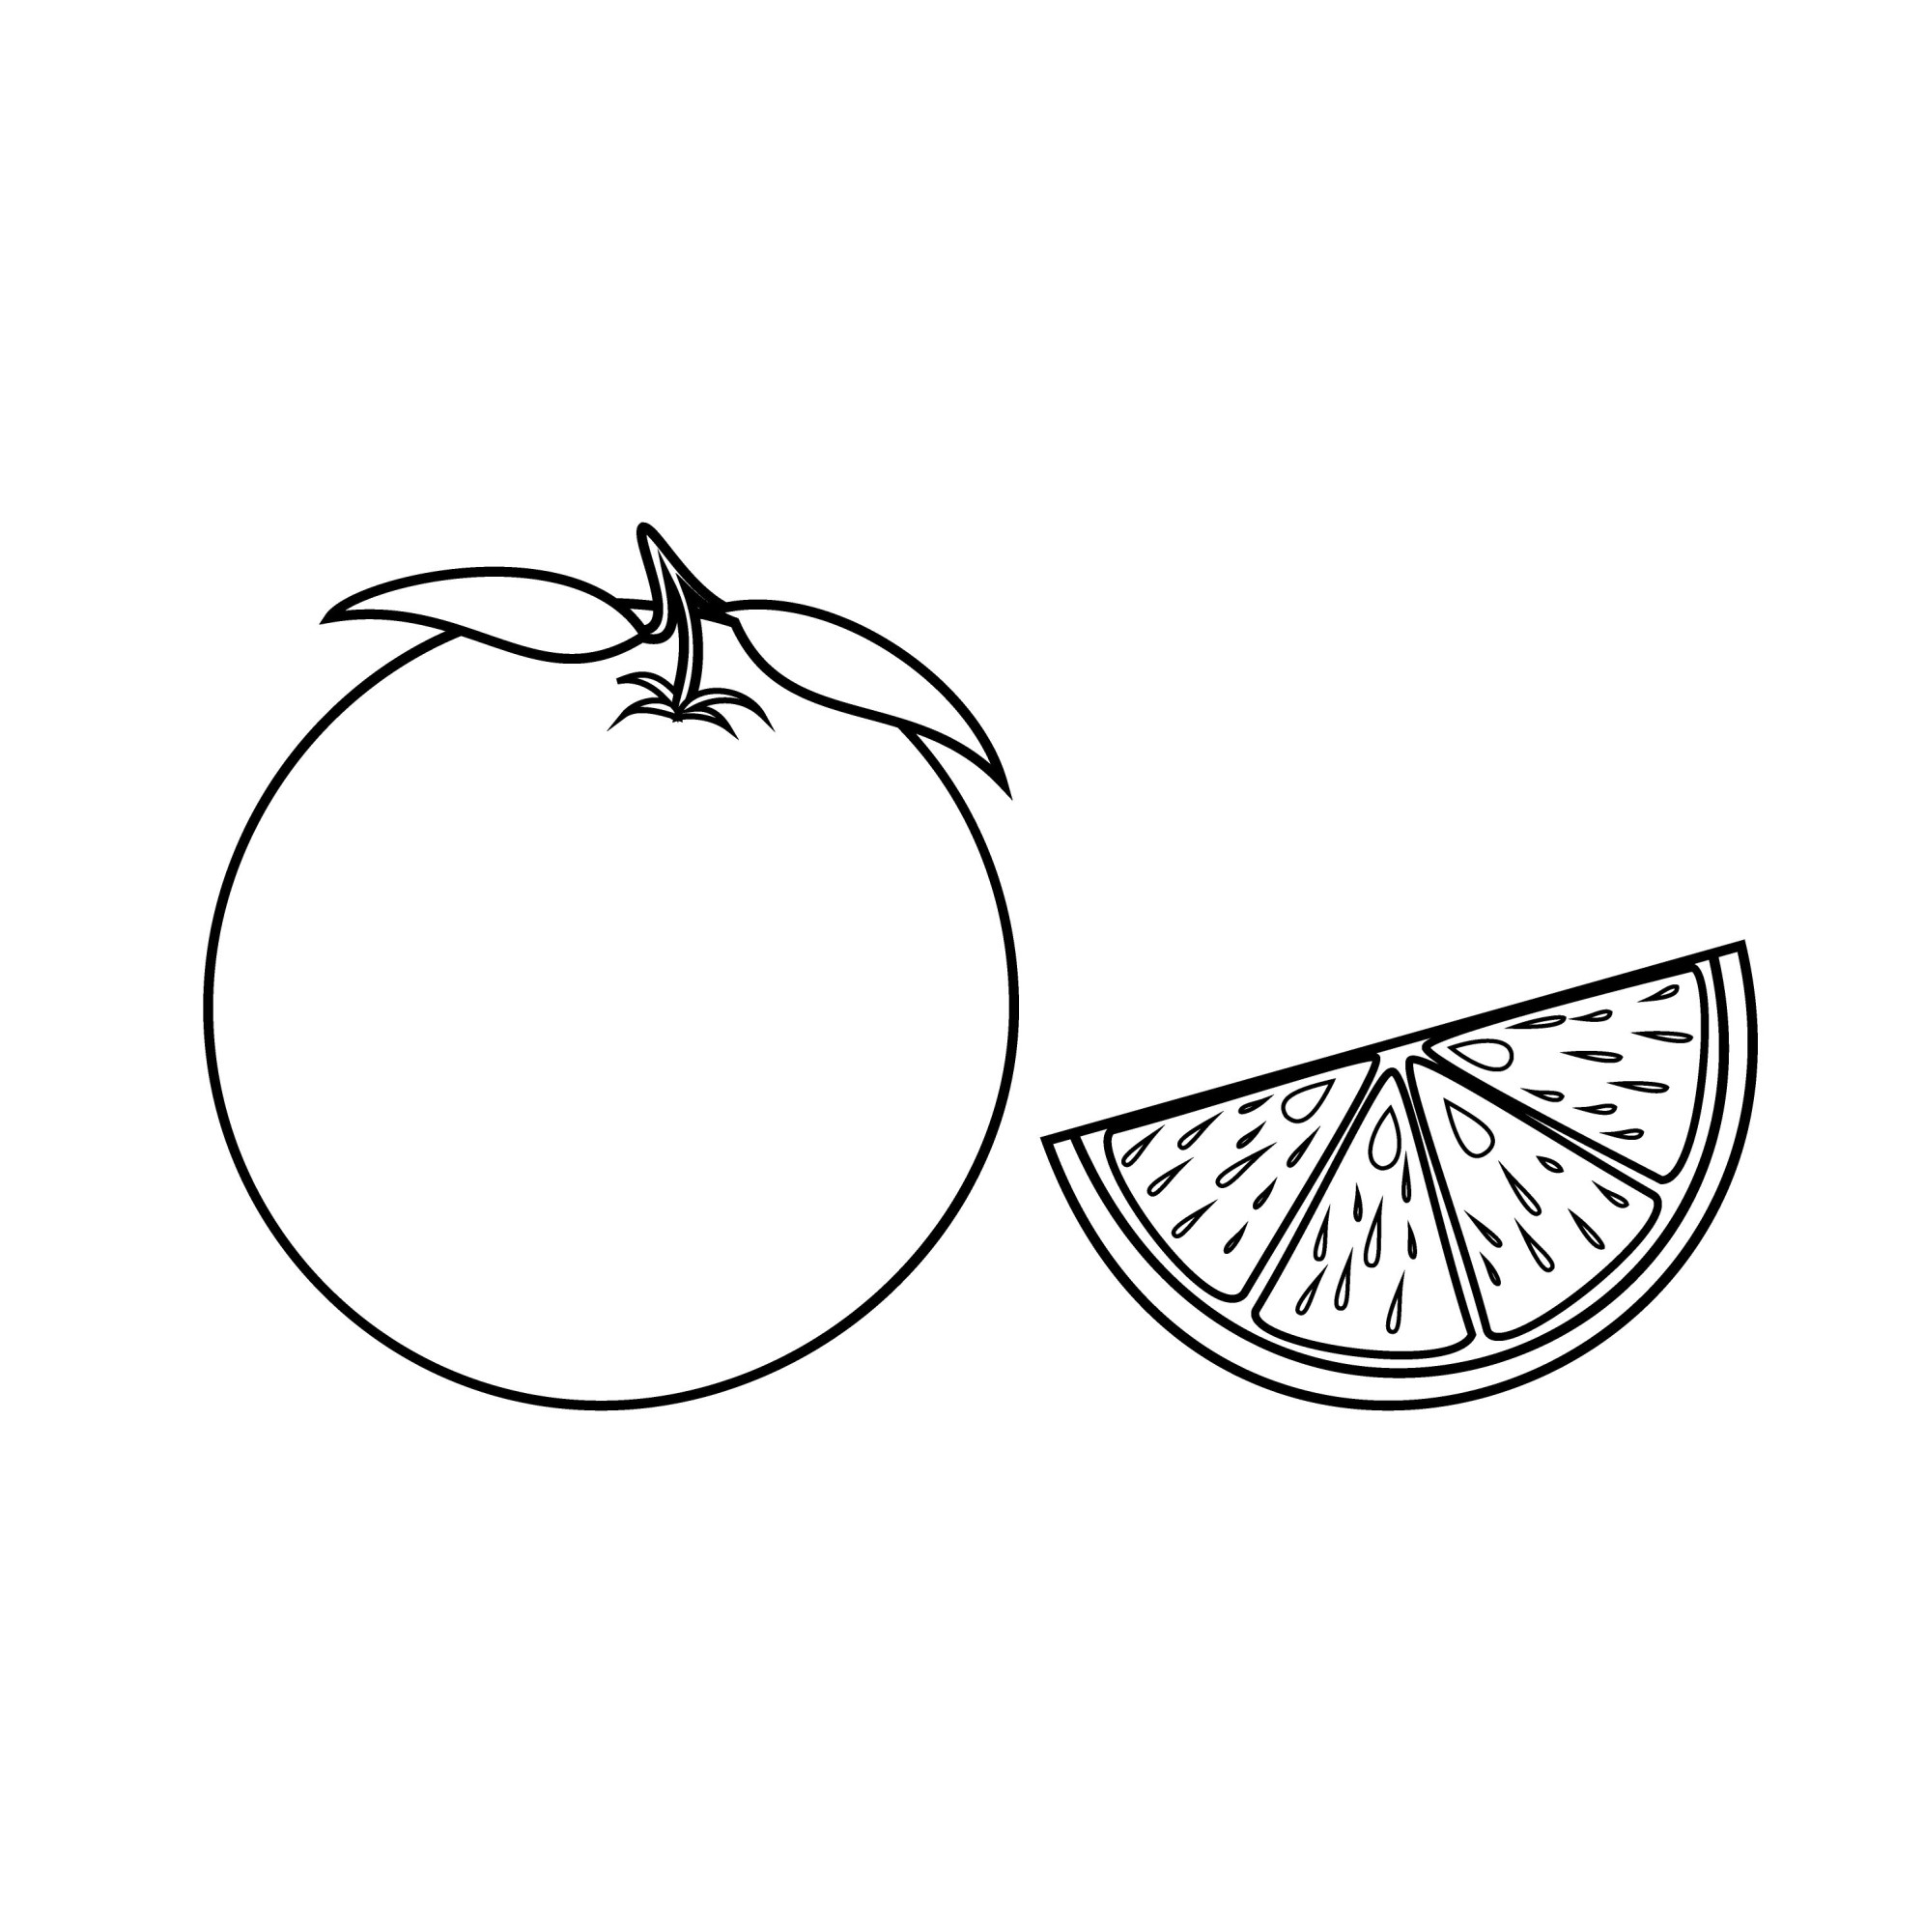 Раскраска для детей: сладкий фрукт апельсин с долькой